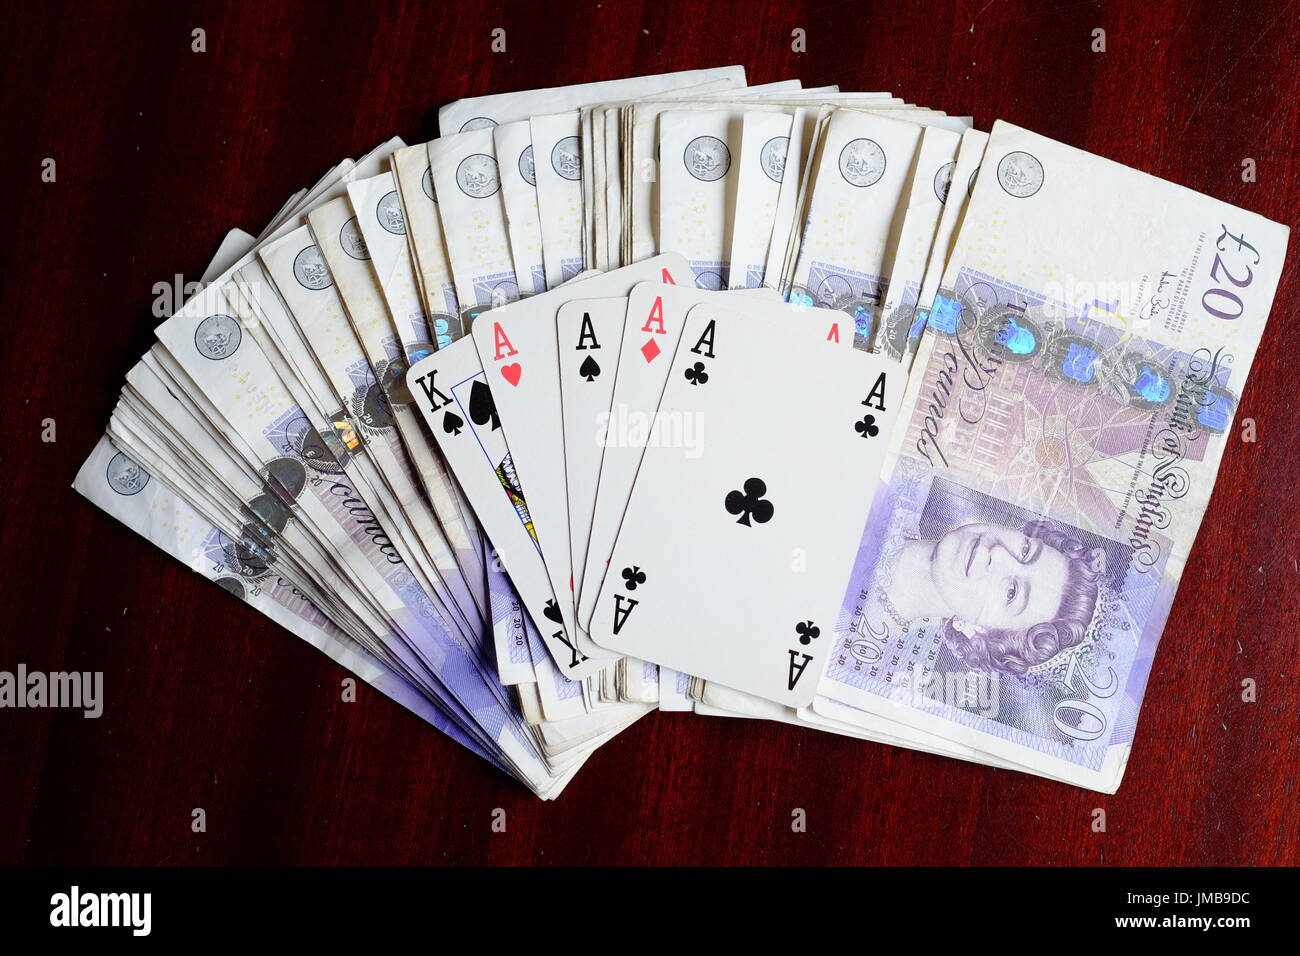 Cuatro ases y un rey, una mano de póquer ganadora y una fortuna en £20 notas sobre una mesa oscura Foto de stock